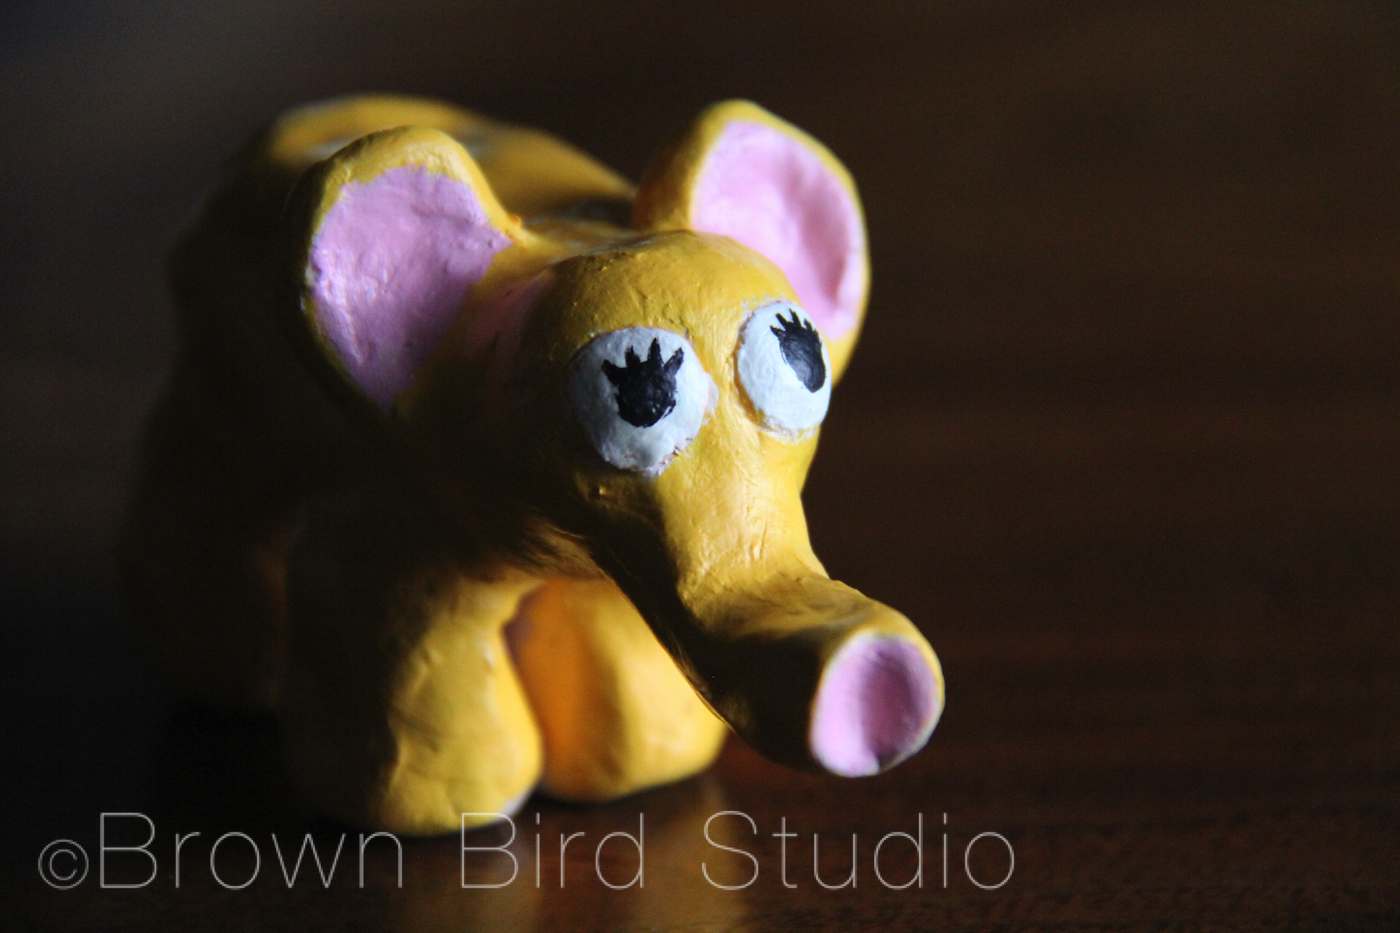 yellow ceramic elephant